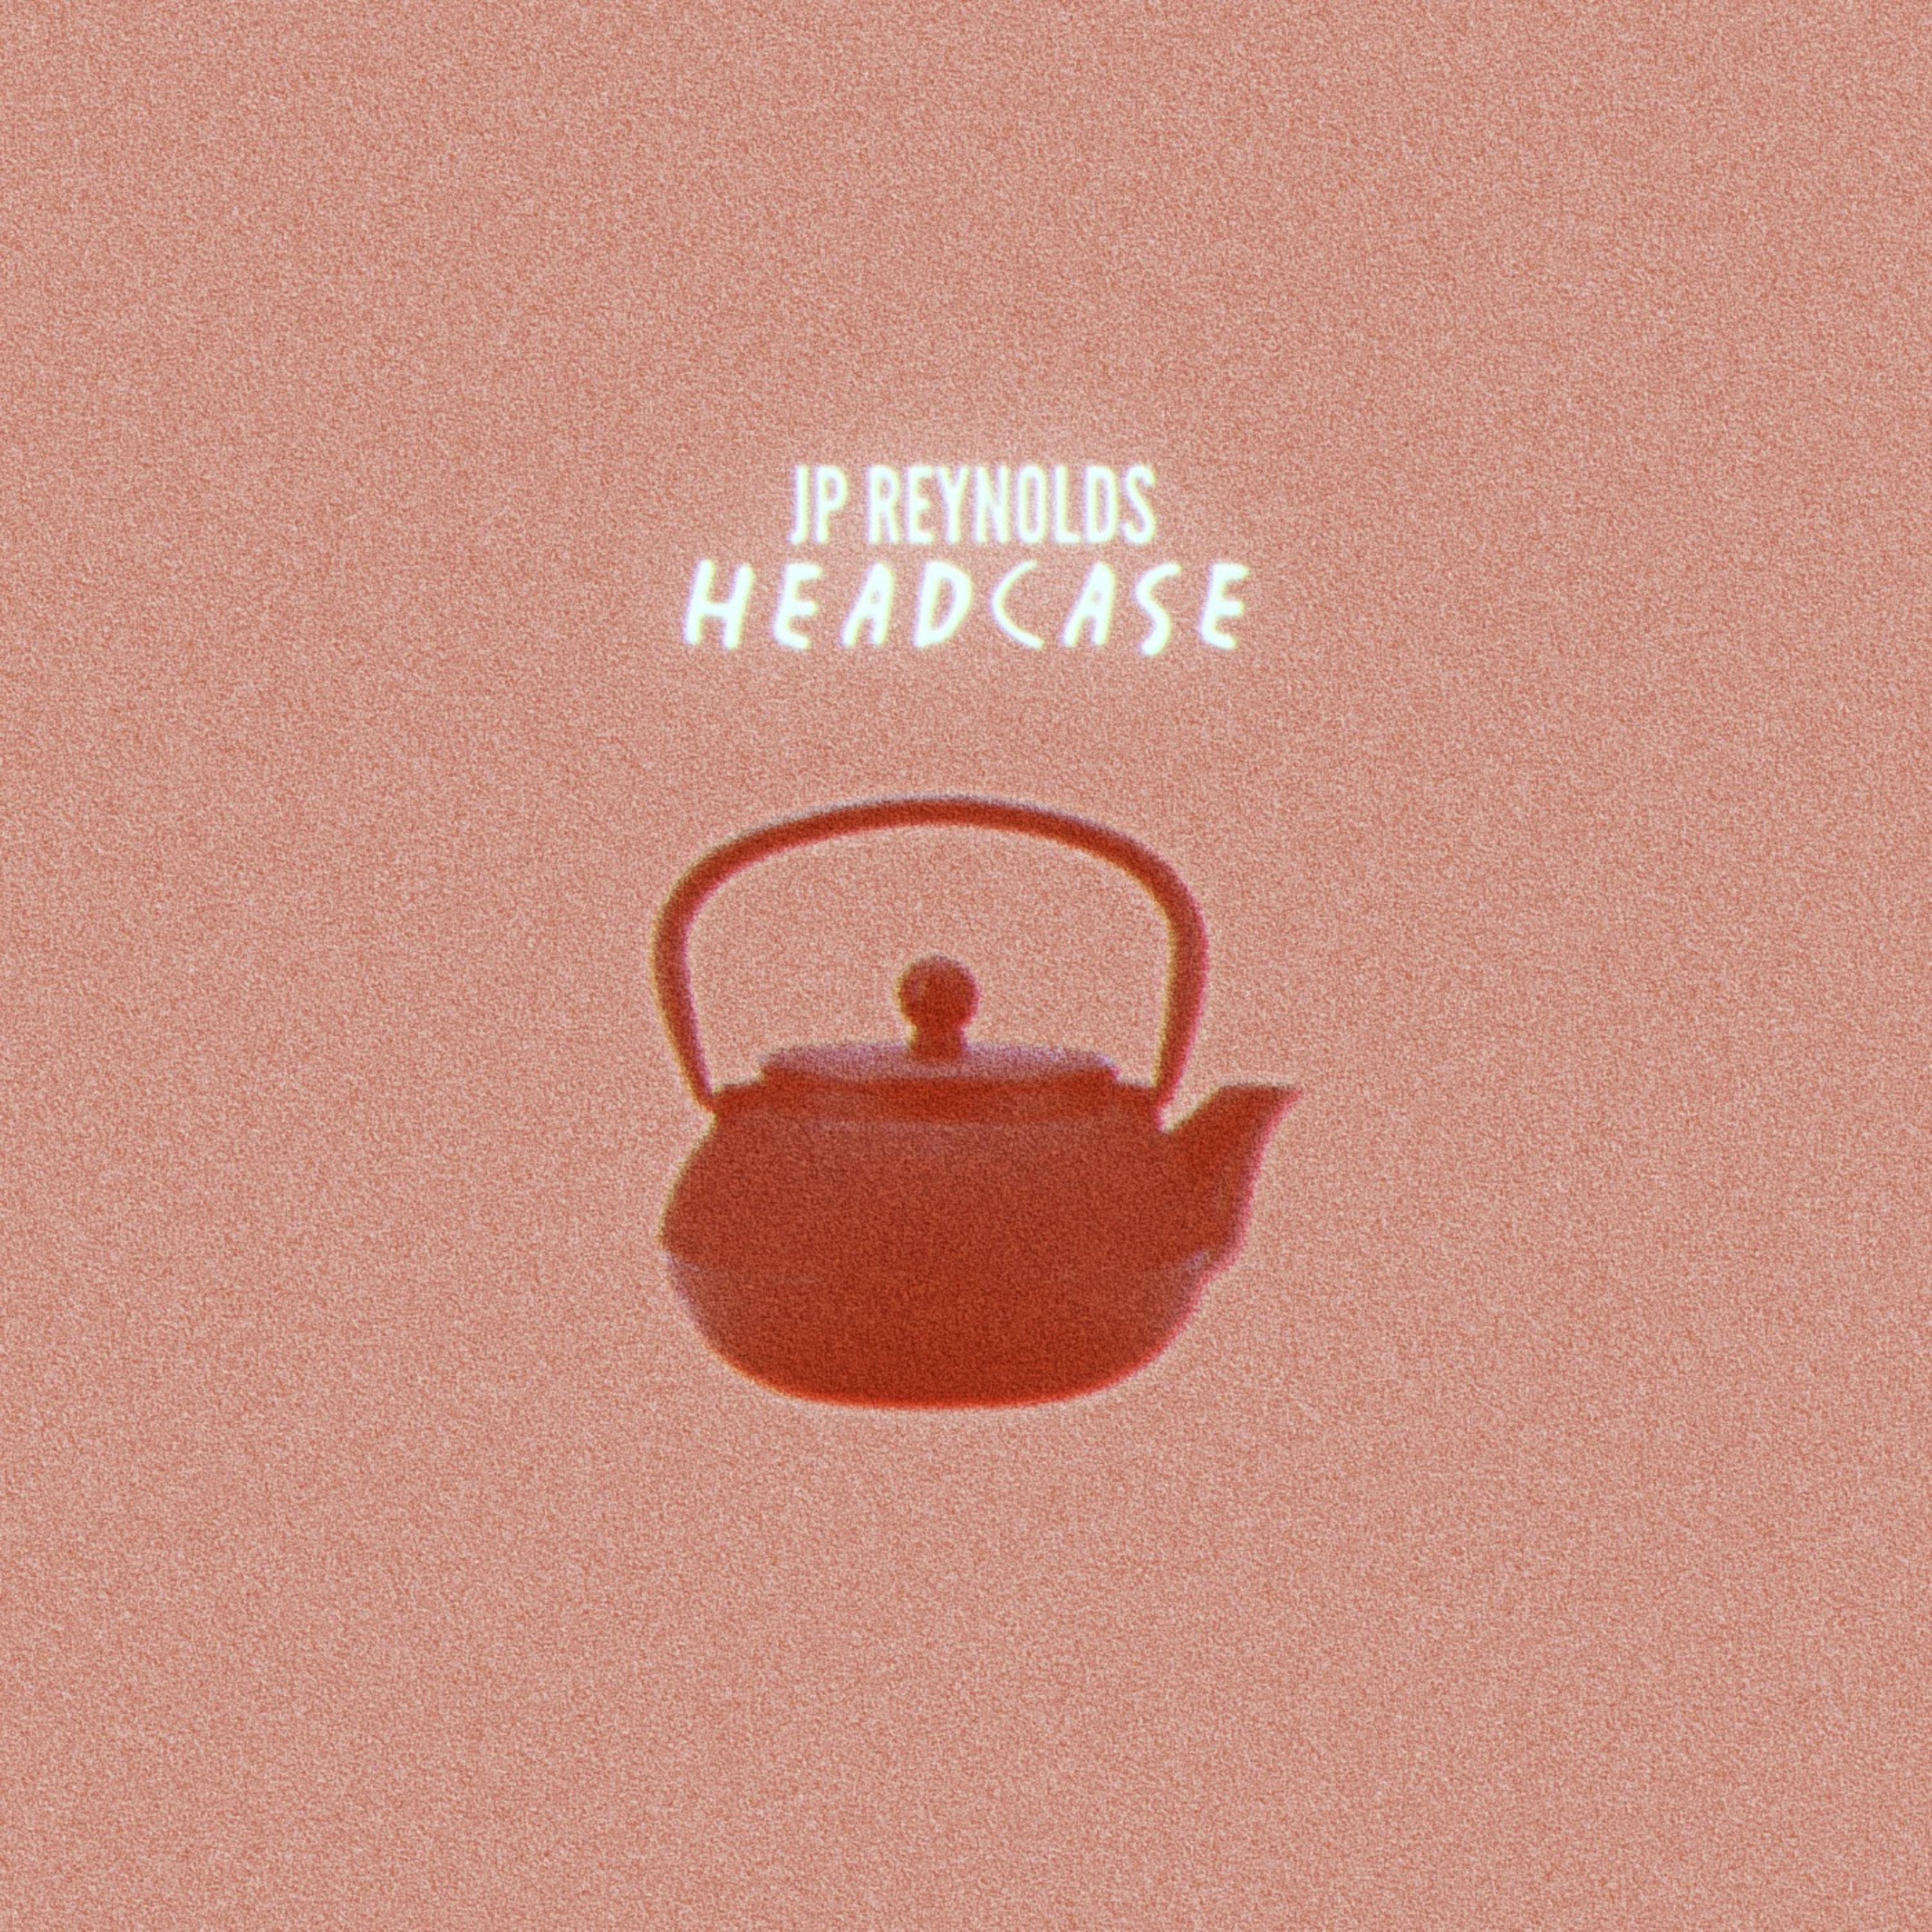 JP Reynolds - Headcase (feat. Yondo)